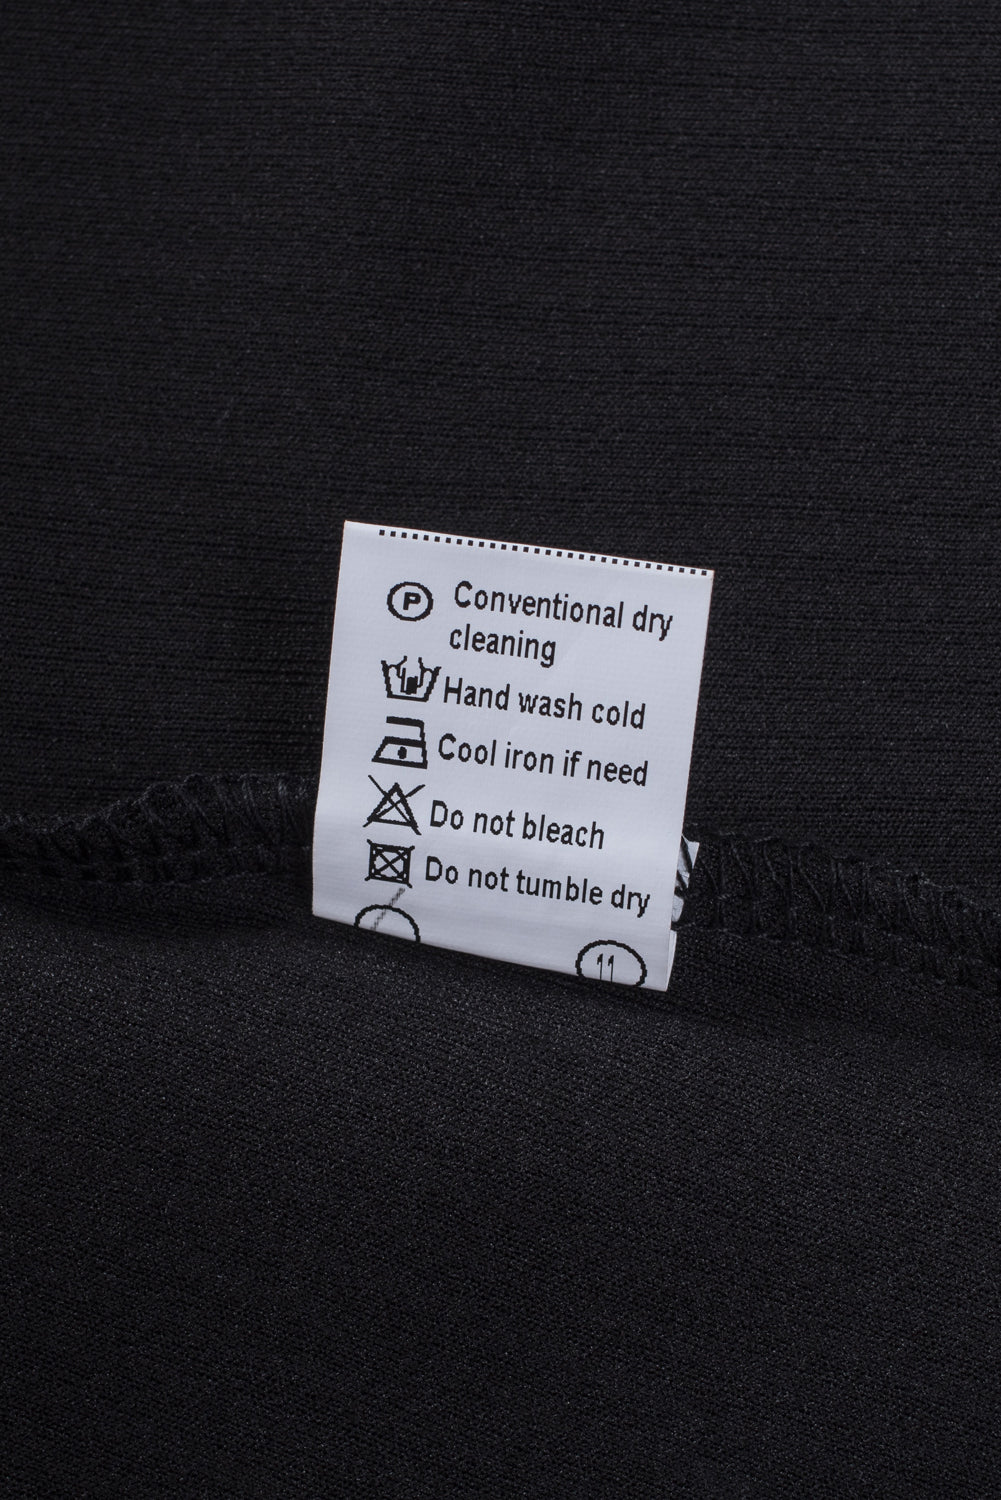 Crna kontrastna mrežasta pletena majica kratkih rukava